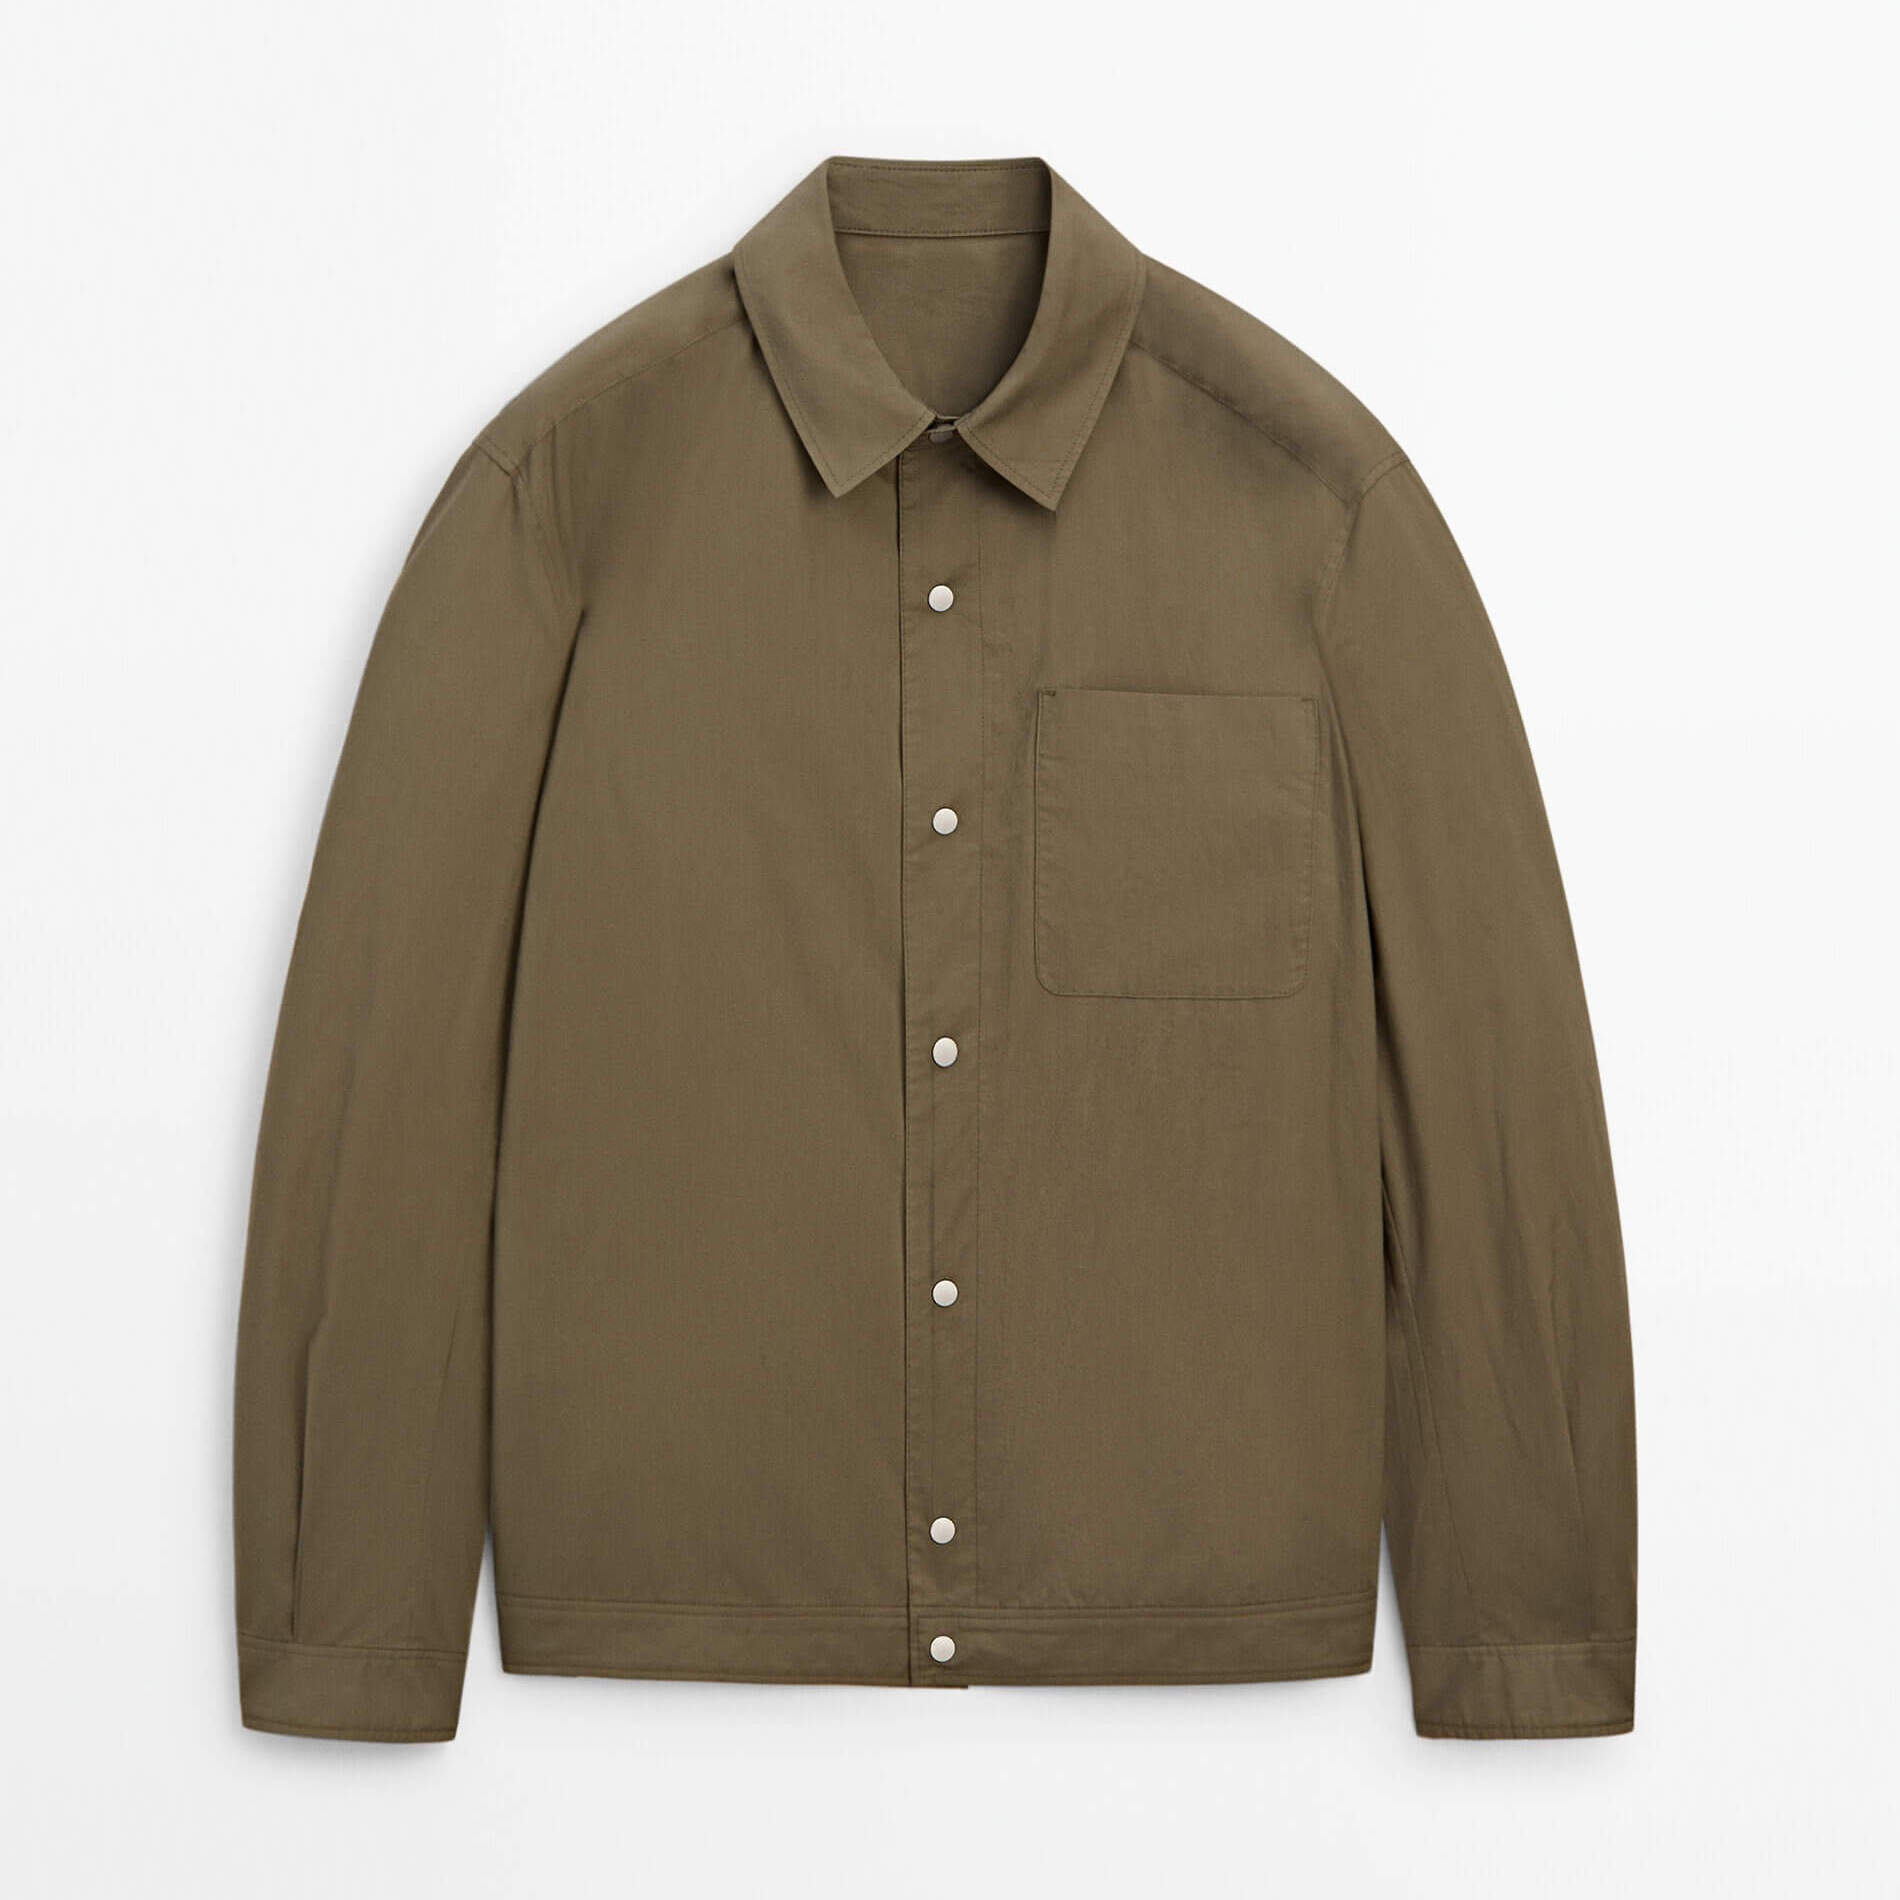 Куртка-рубашка Massimo Dutti Cotton With Chest Pocket, хаки куртка рубашка massimo dutti zip up with chest pockets хаки